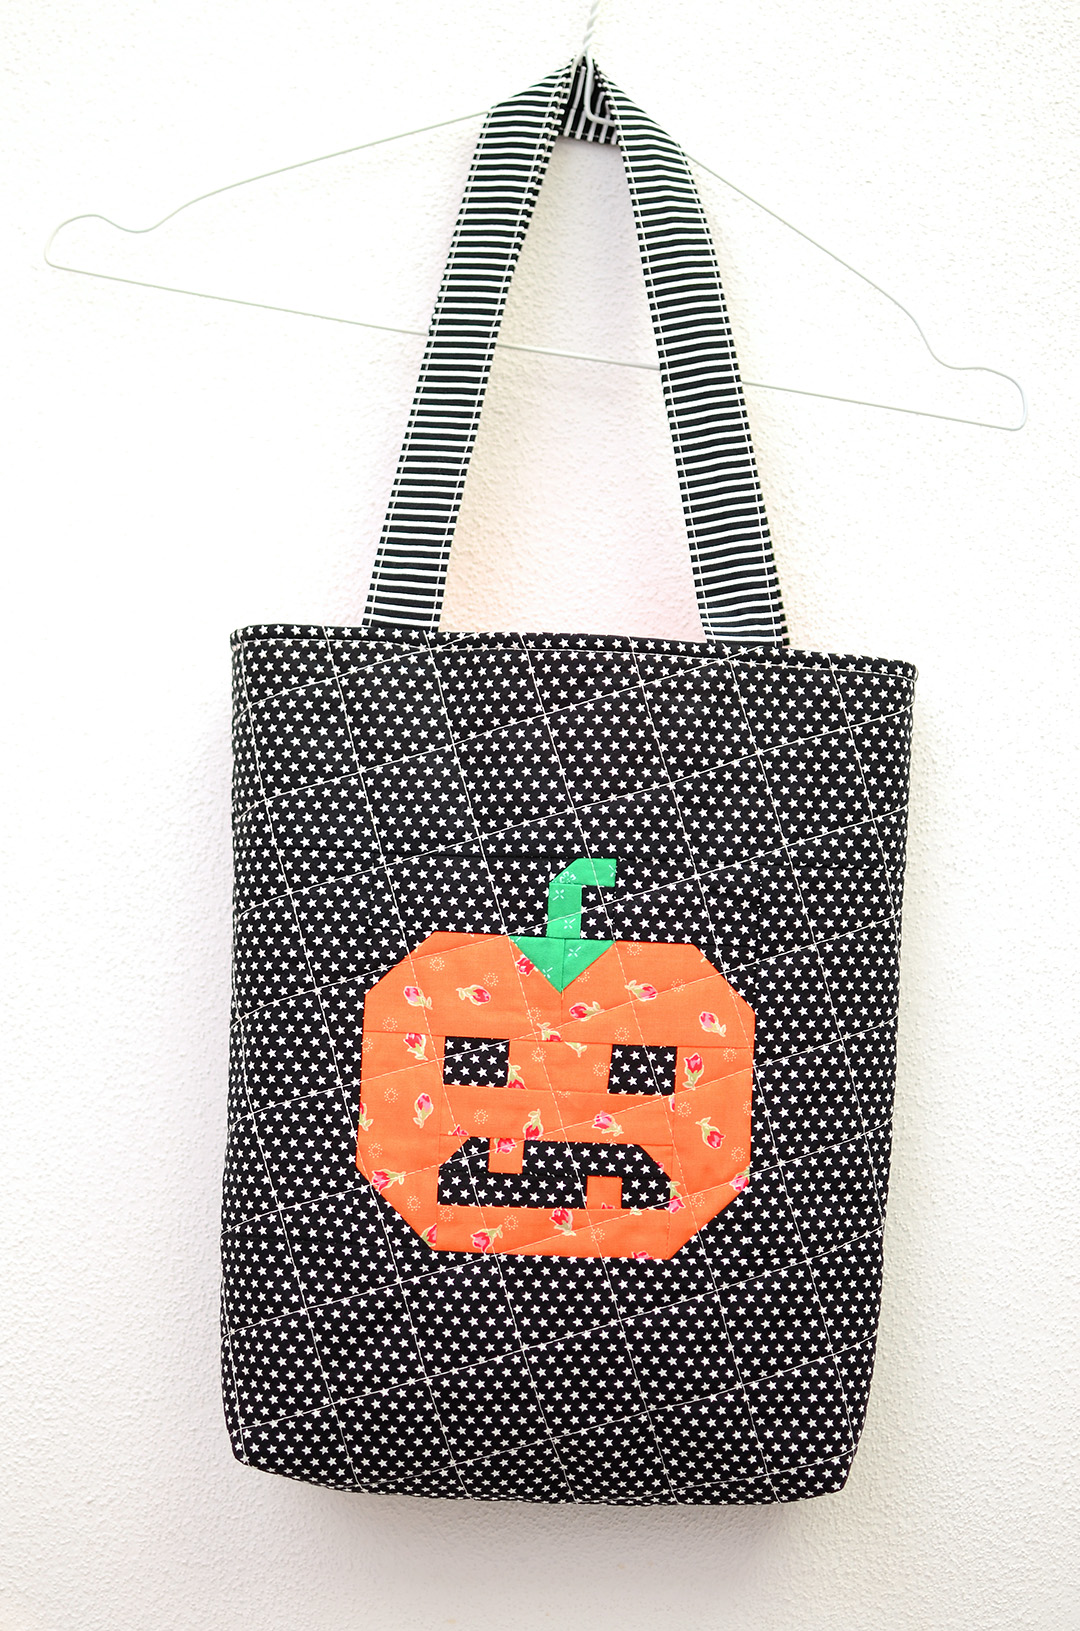 Pumpkin Trick or Treat Bag - Tutorial & Pattern Add-on